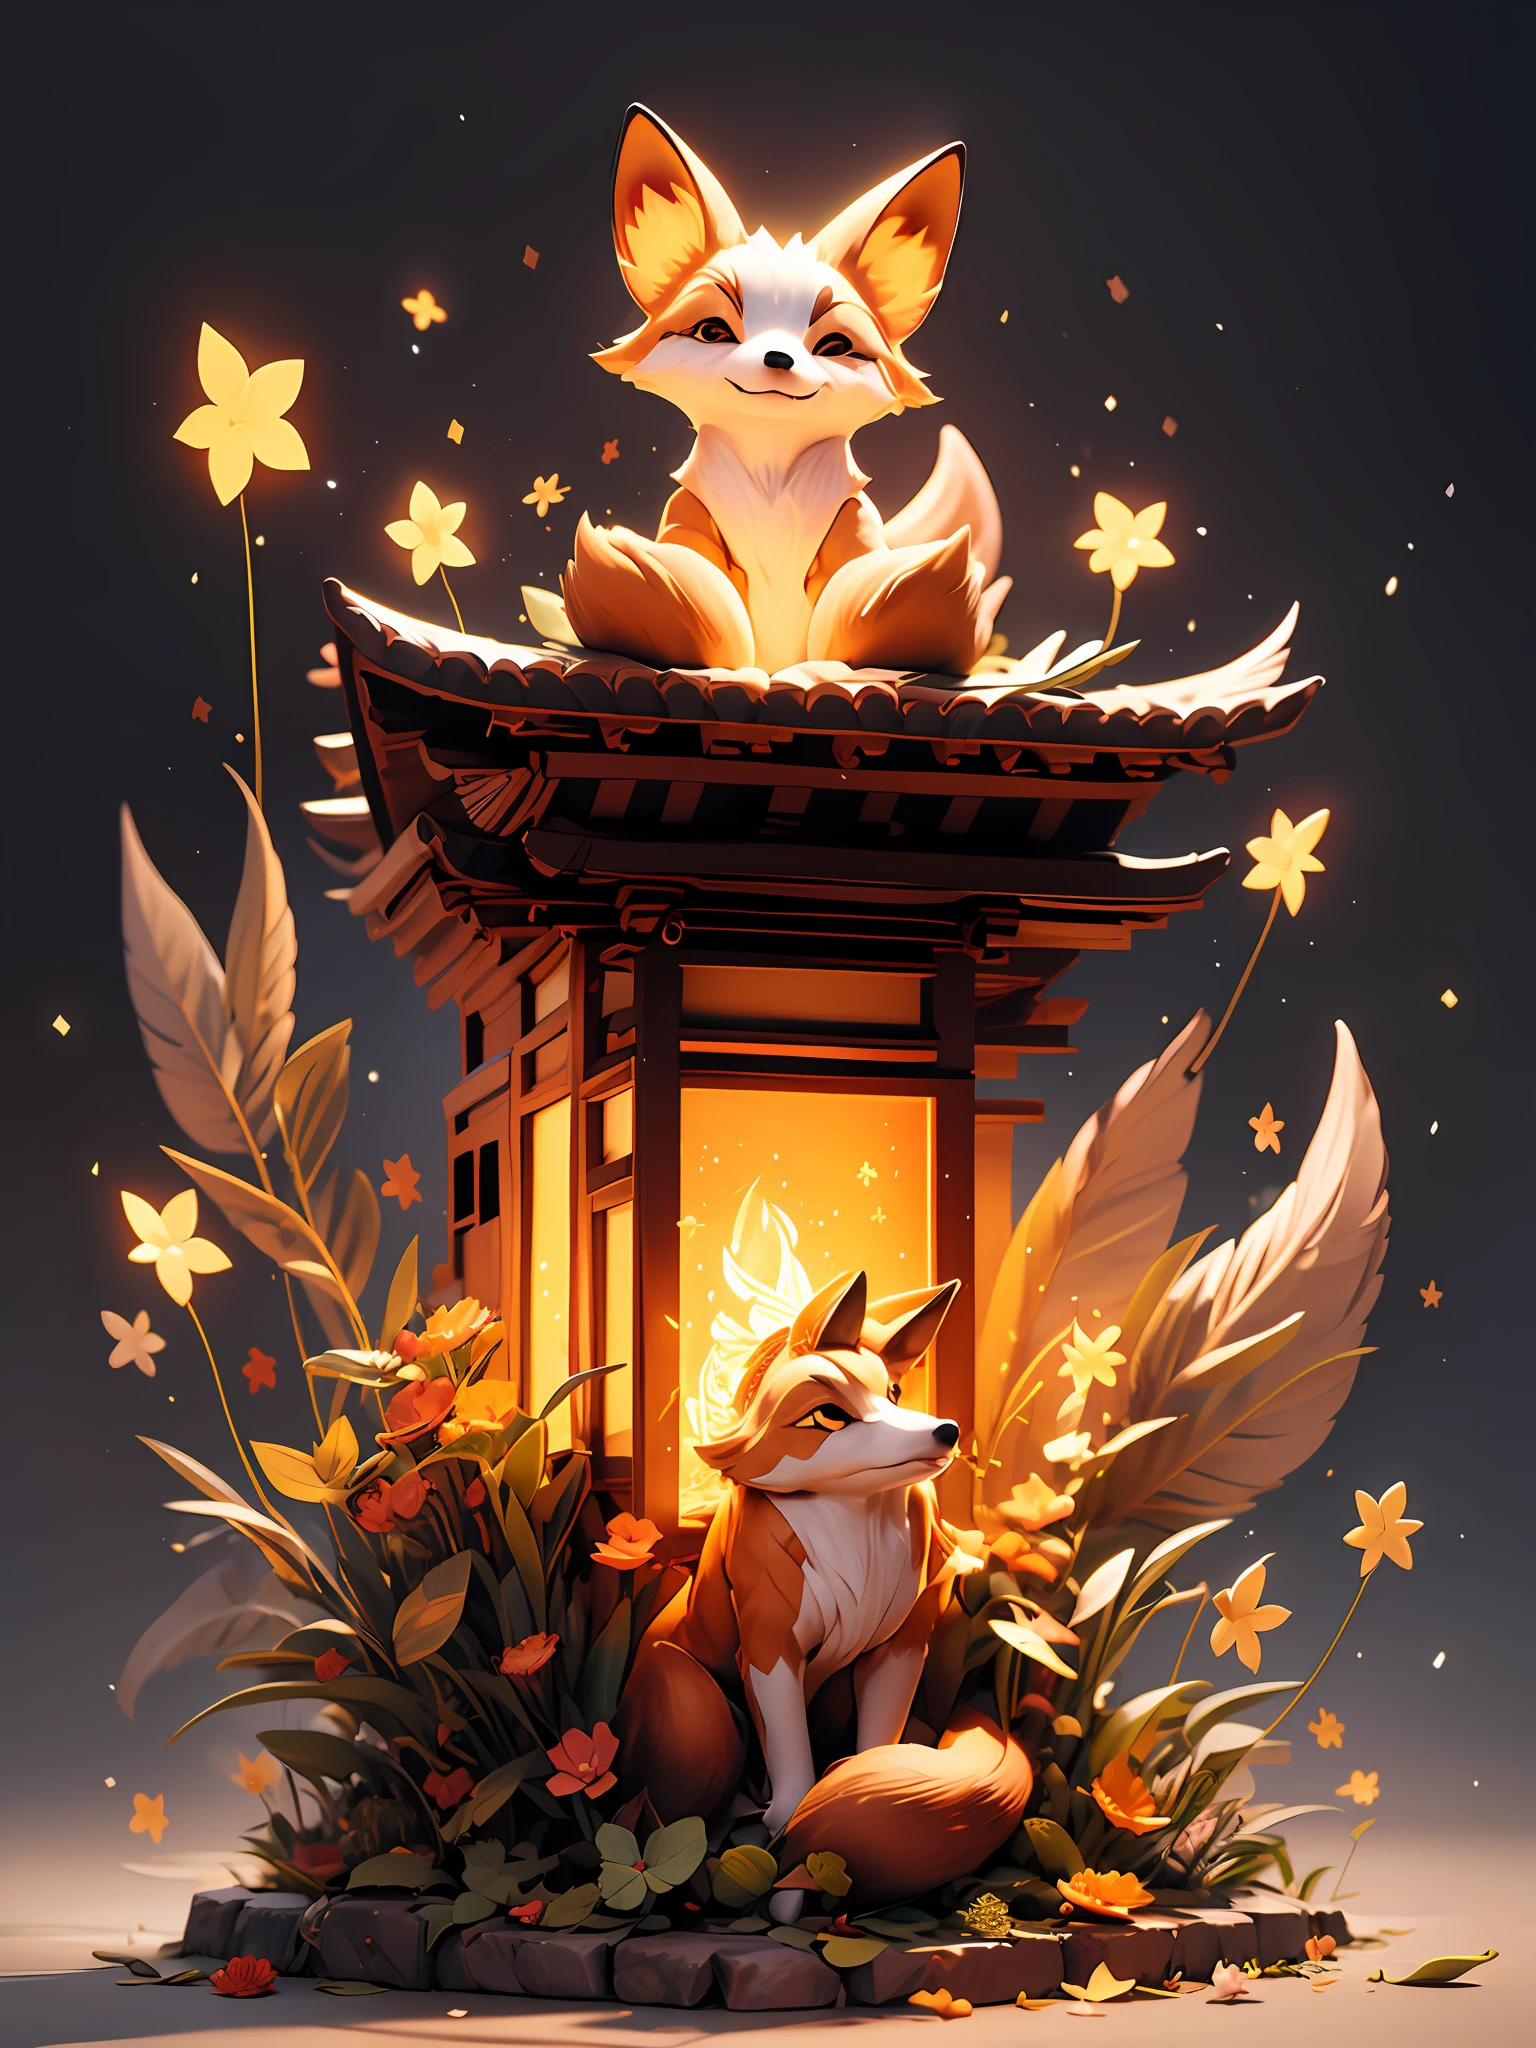 "Cena noturna encantadora com um templo japonês, uma raposa brilhante cativante cercada por partículas de luz hipnotizantes e um efeito de luz impressionante. Nenhum humano presente."